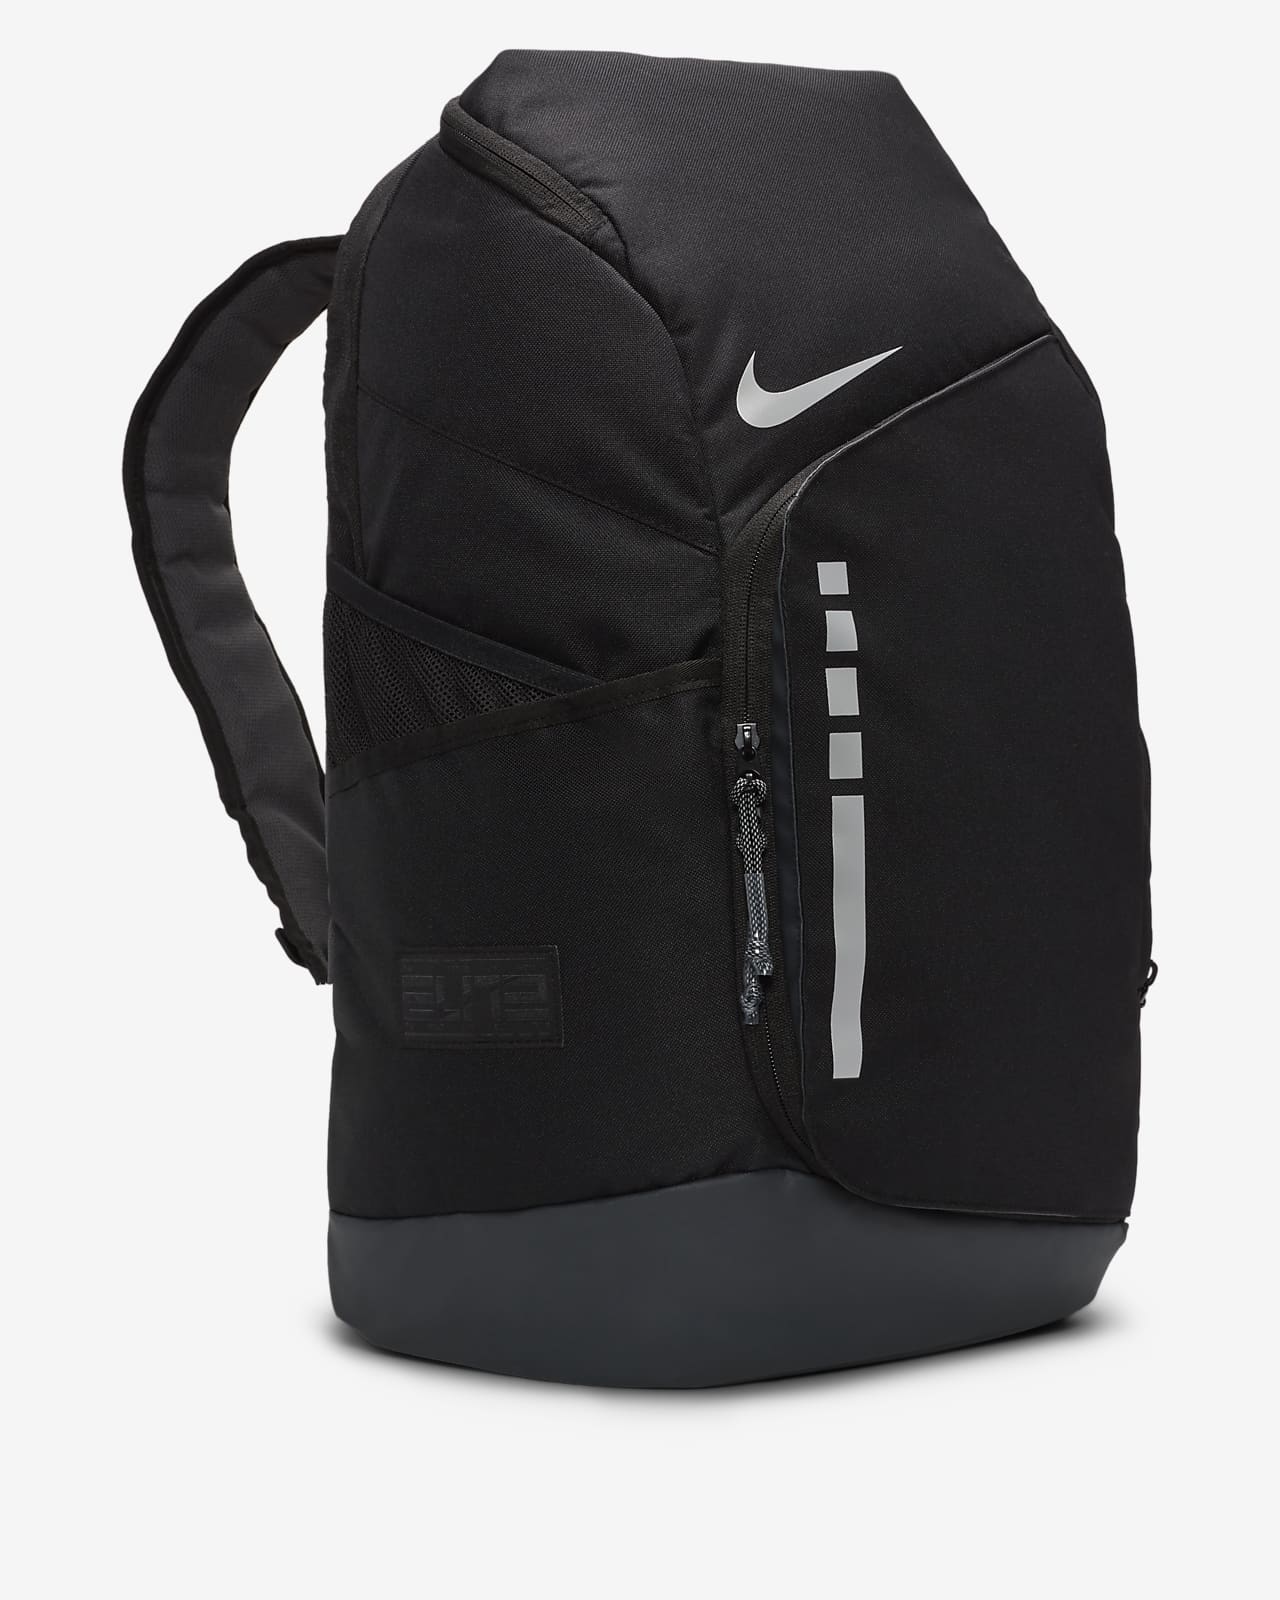 Hoops Elite Bag ‘Black’